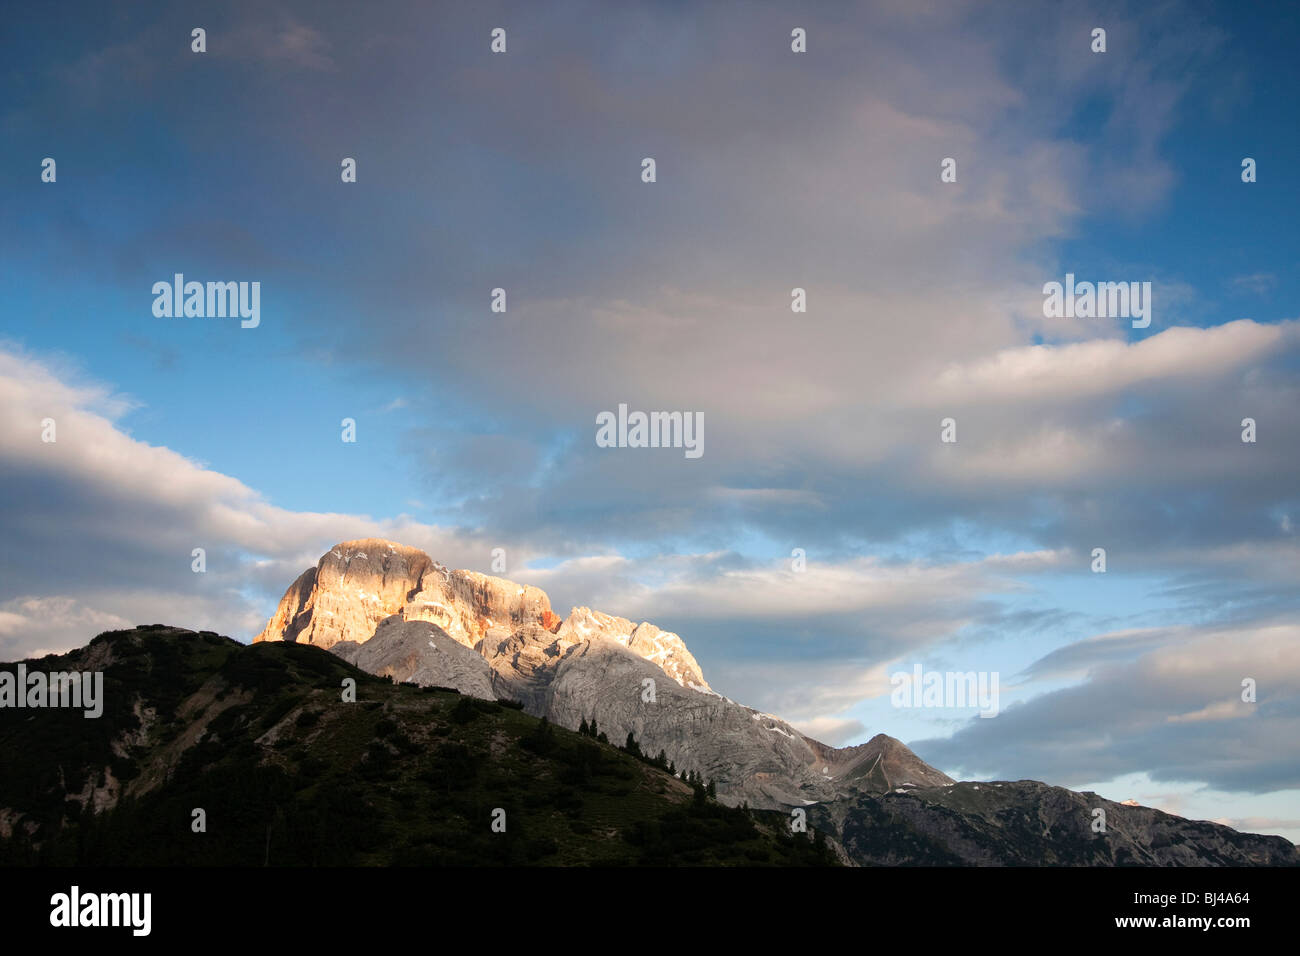 La montagne de Croda Rossa dans la matinée, le Tyrol du Sud, Italie, Europe Banque D'Images